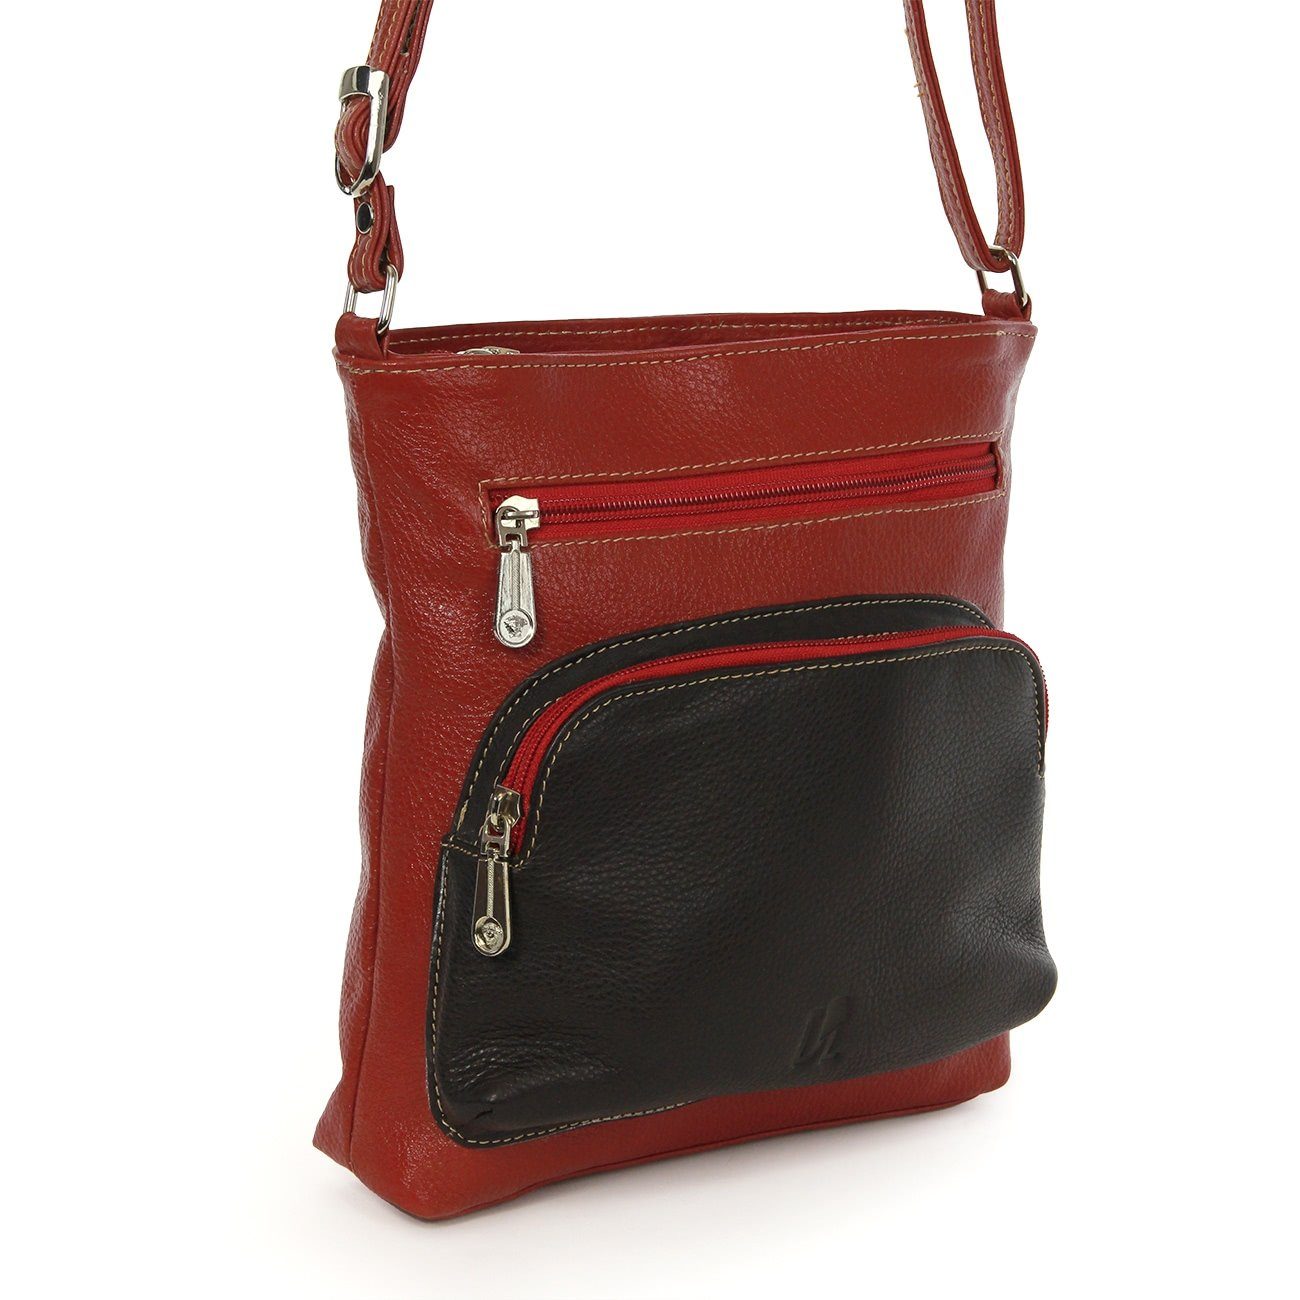 schwarz, Damen DrachenLeder Handtasche Echtleder Damen Handtasche DrachenLeder OTZ900X rot Tasche, (Handtasche), braun